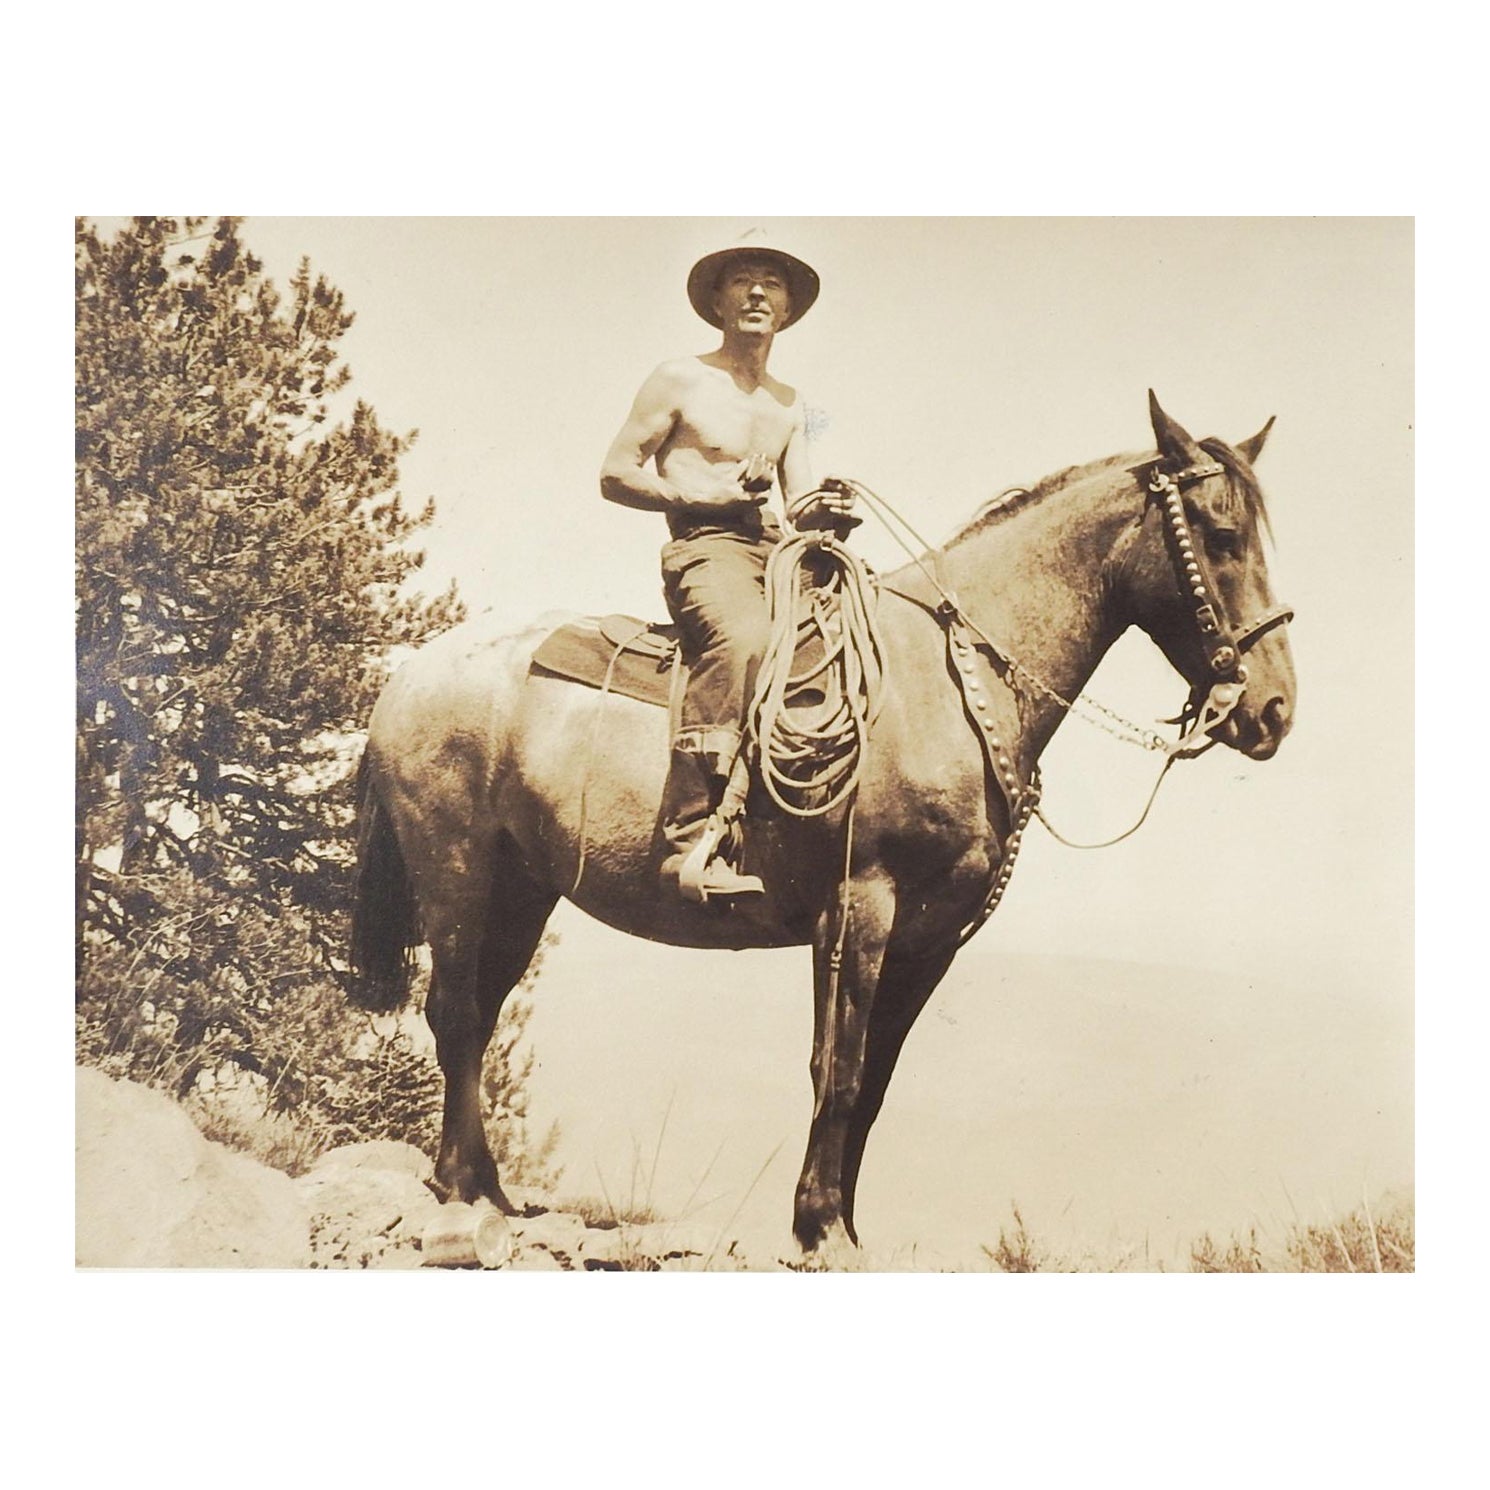 Photographie de cheval et de cavalier datant des années 1940 en Californie